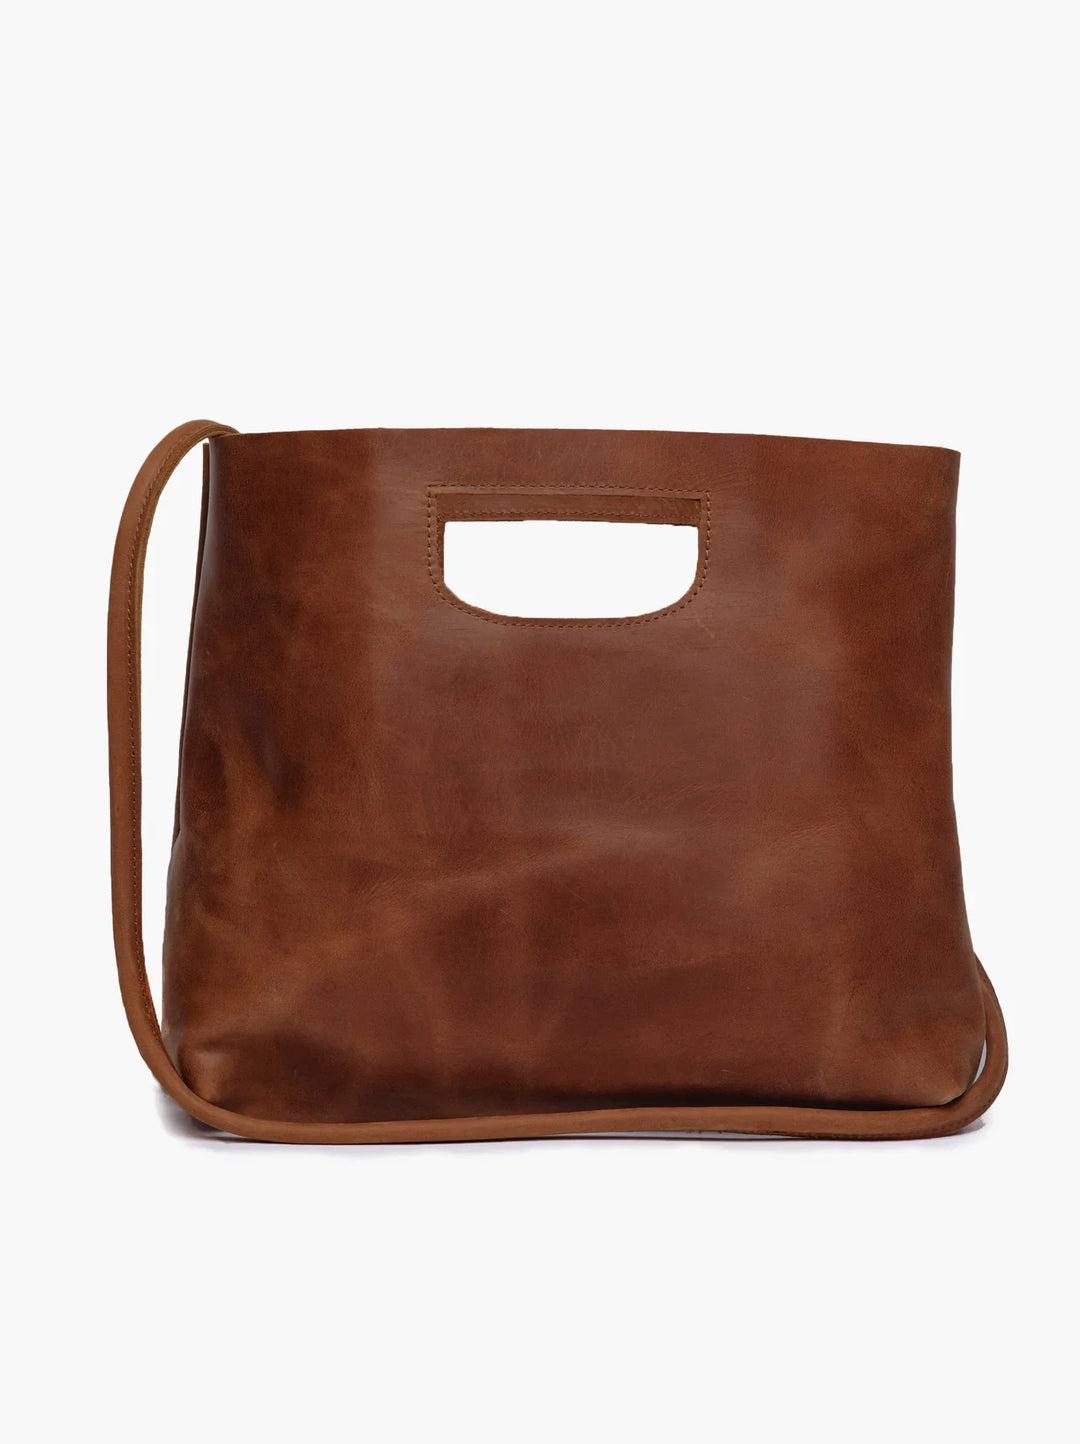 Able-HANA Handbag - Modish Maven Boutique